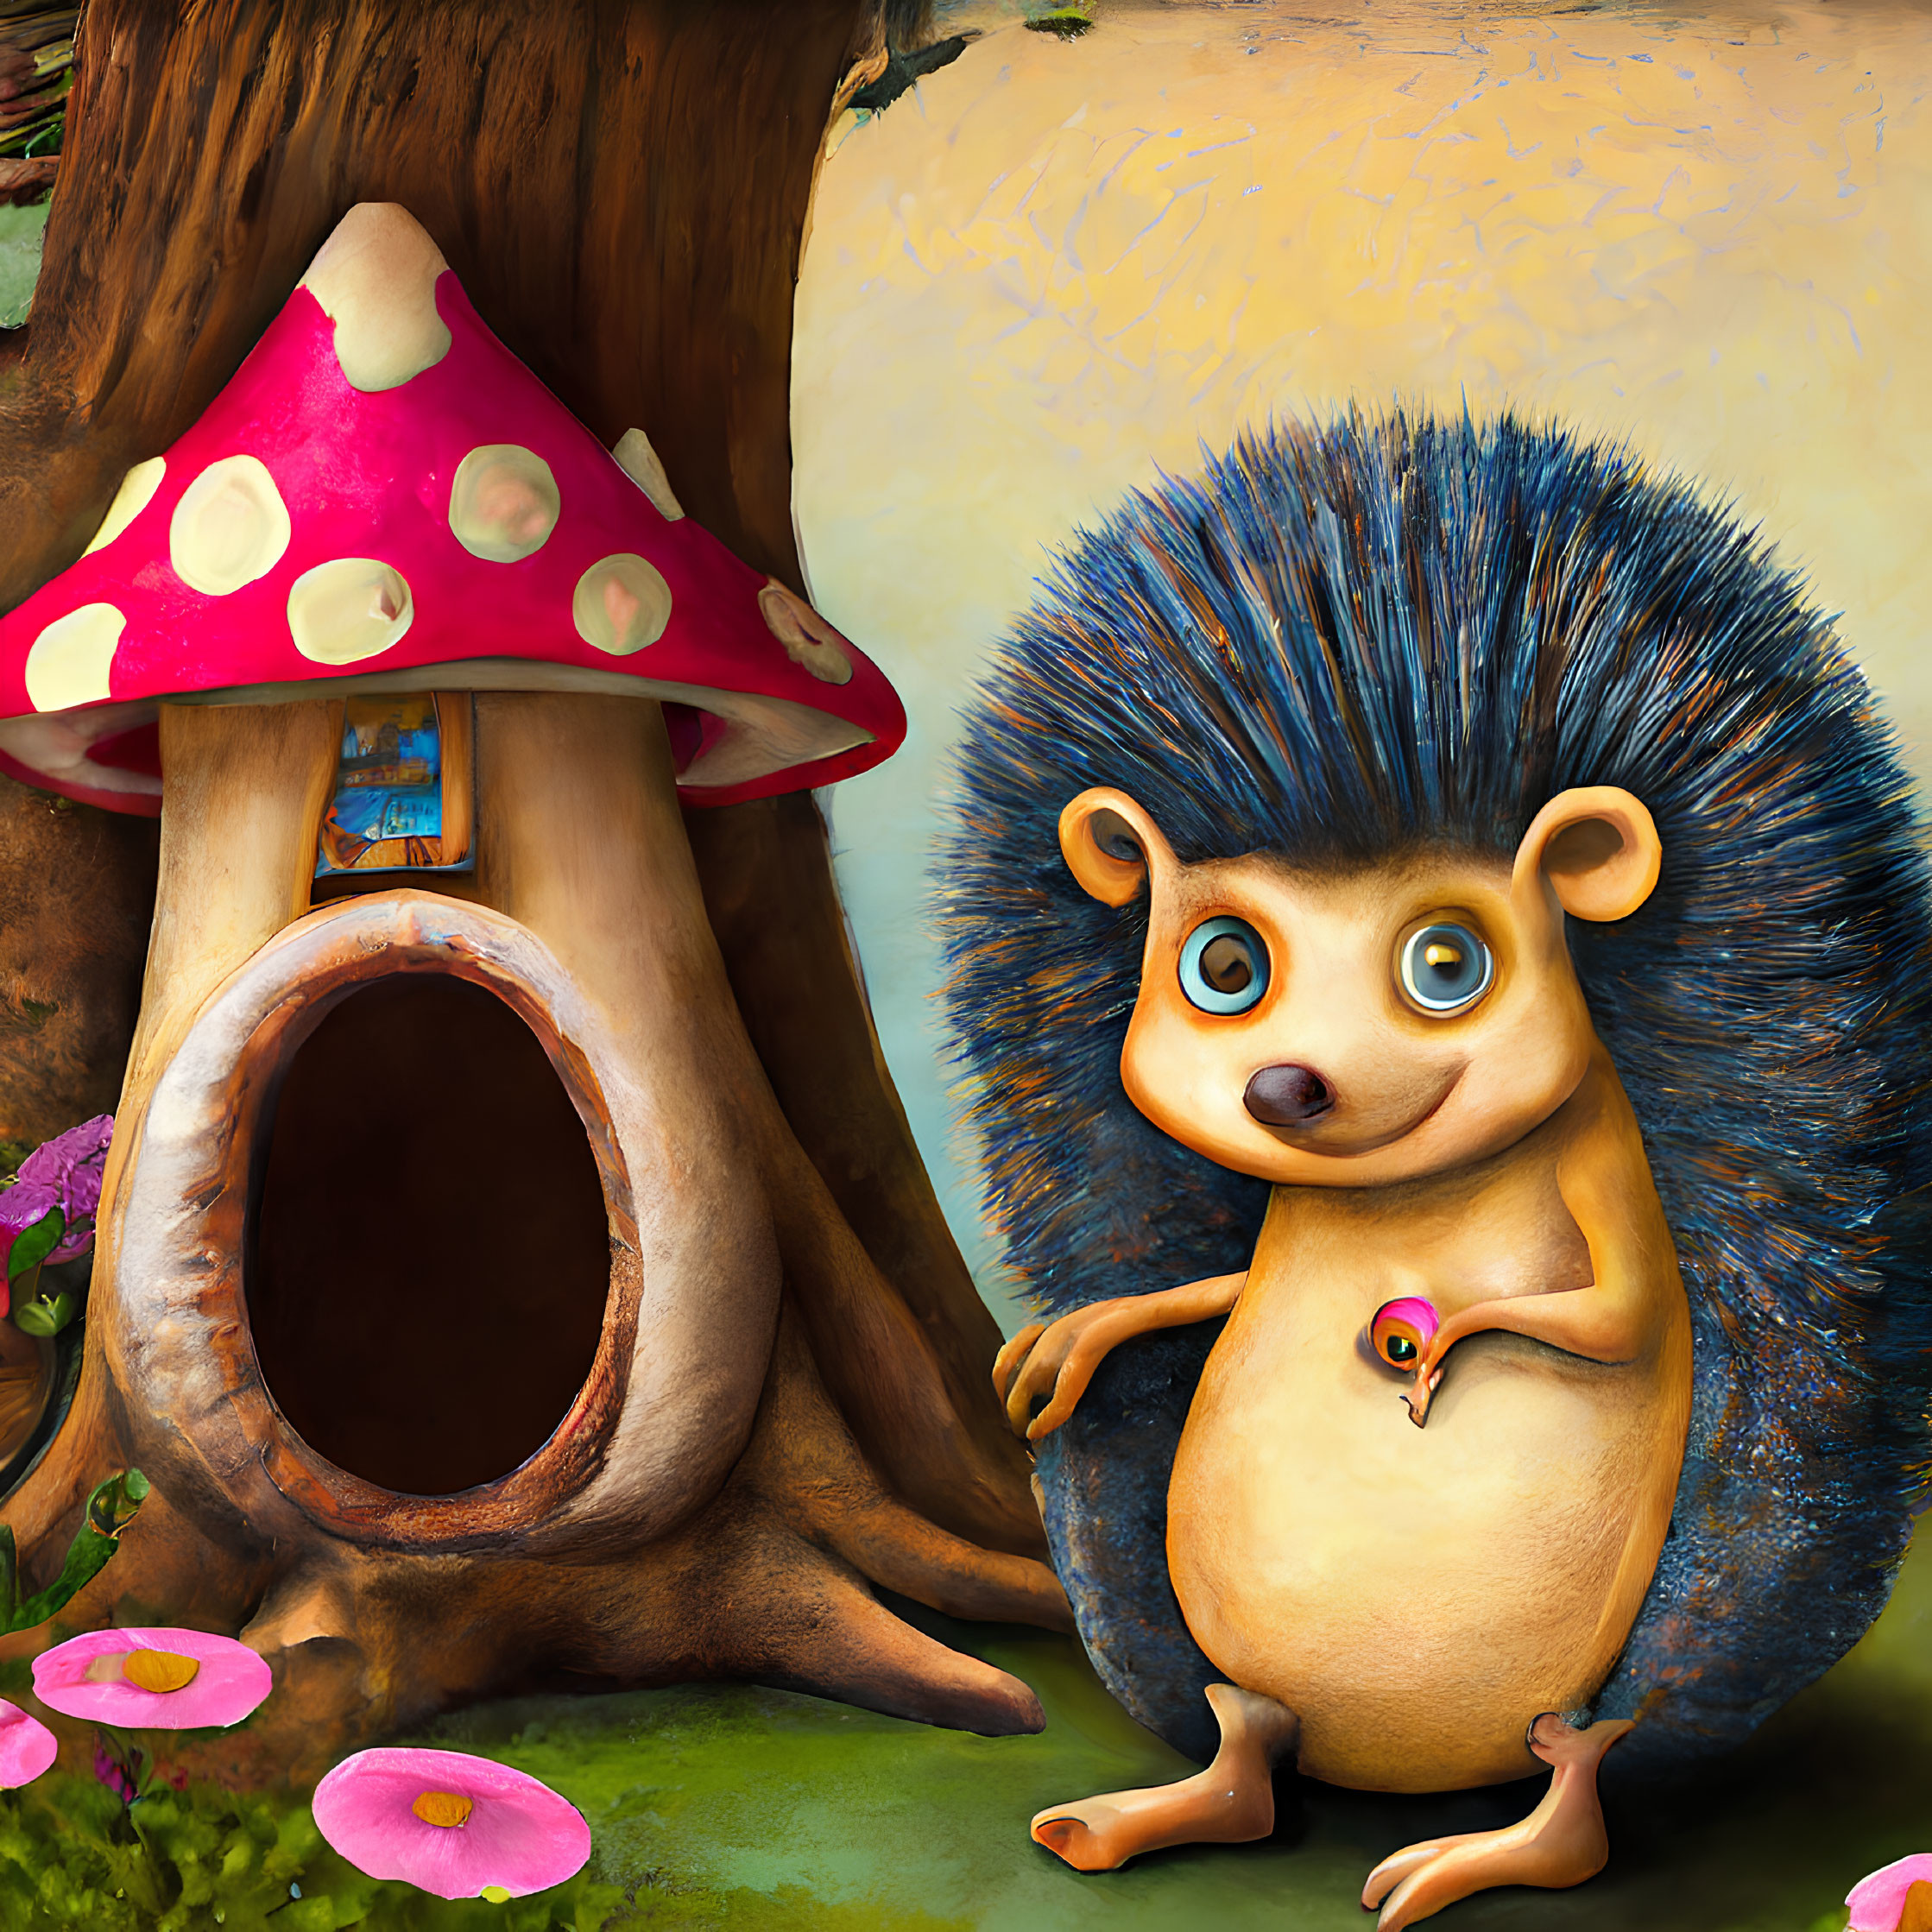 Illustration of hedgehog near mushroom-shaped tree house and flowers